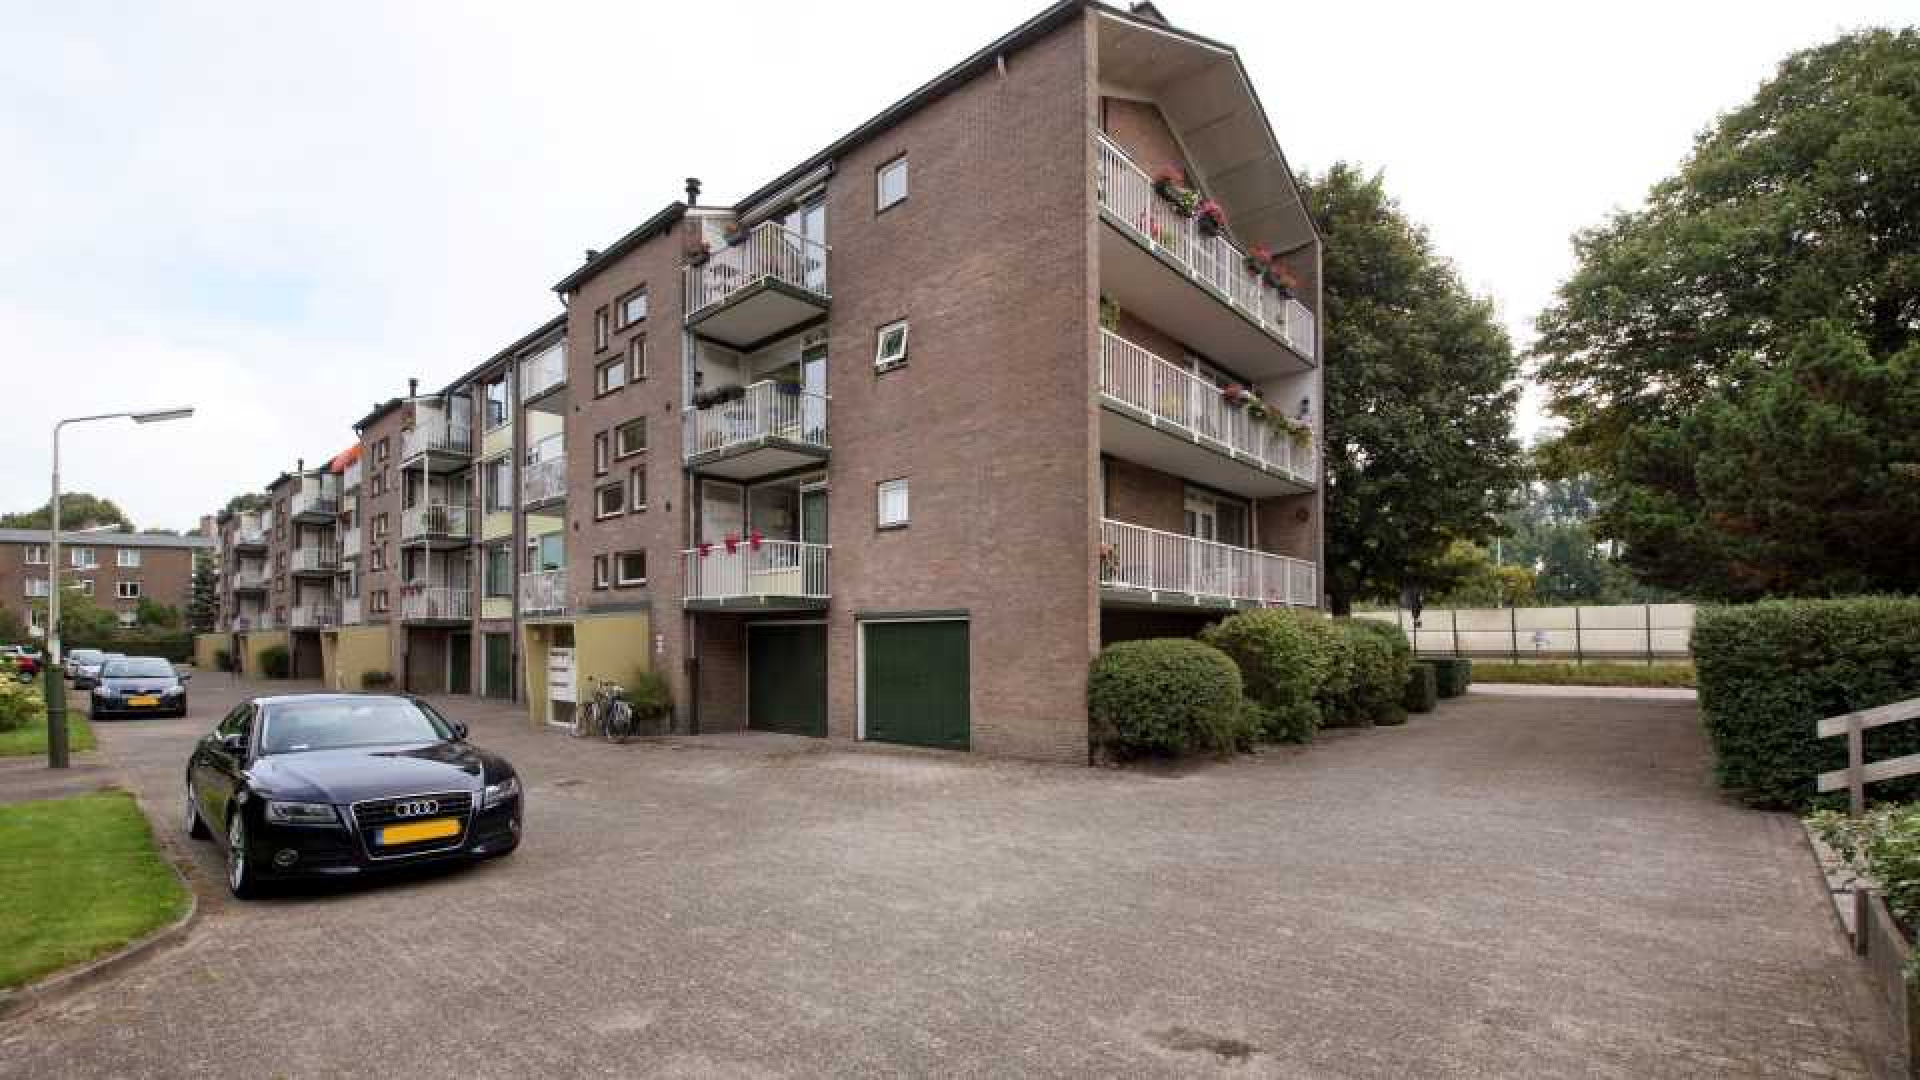 Bastiaan en Tooske Ragas kopen appartement in Overveen. Zie foto's